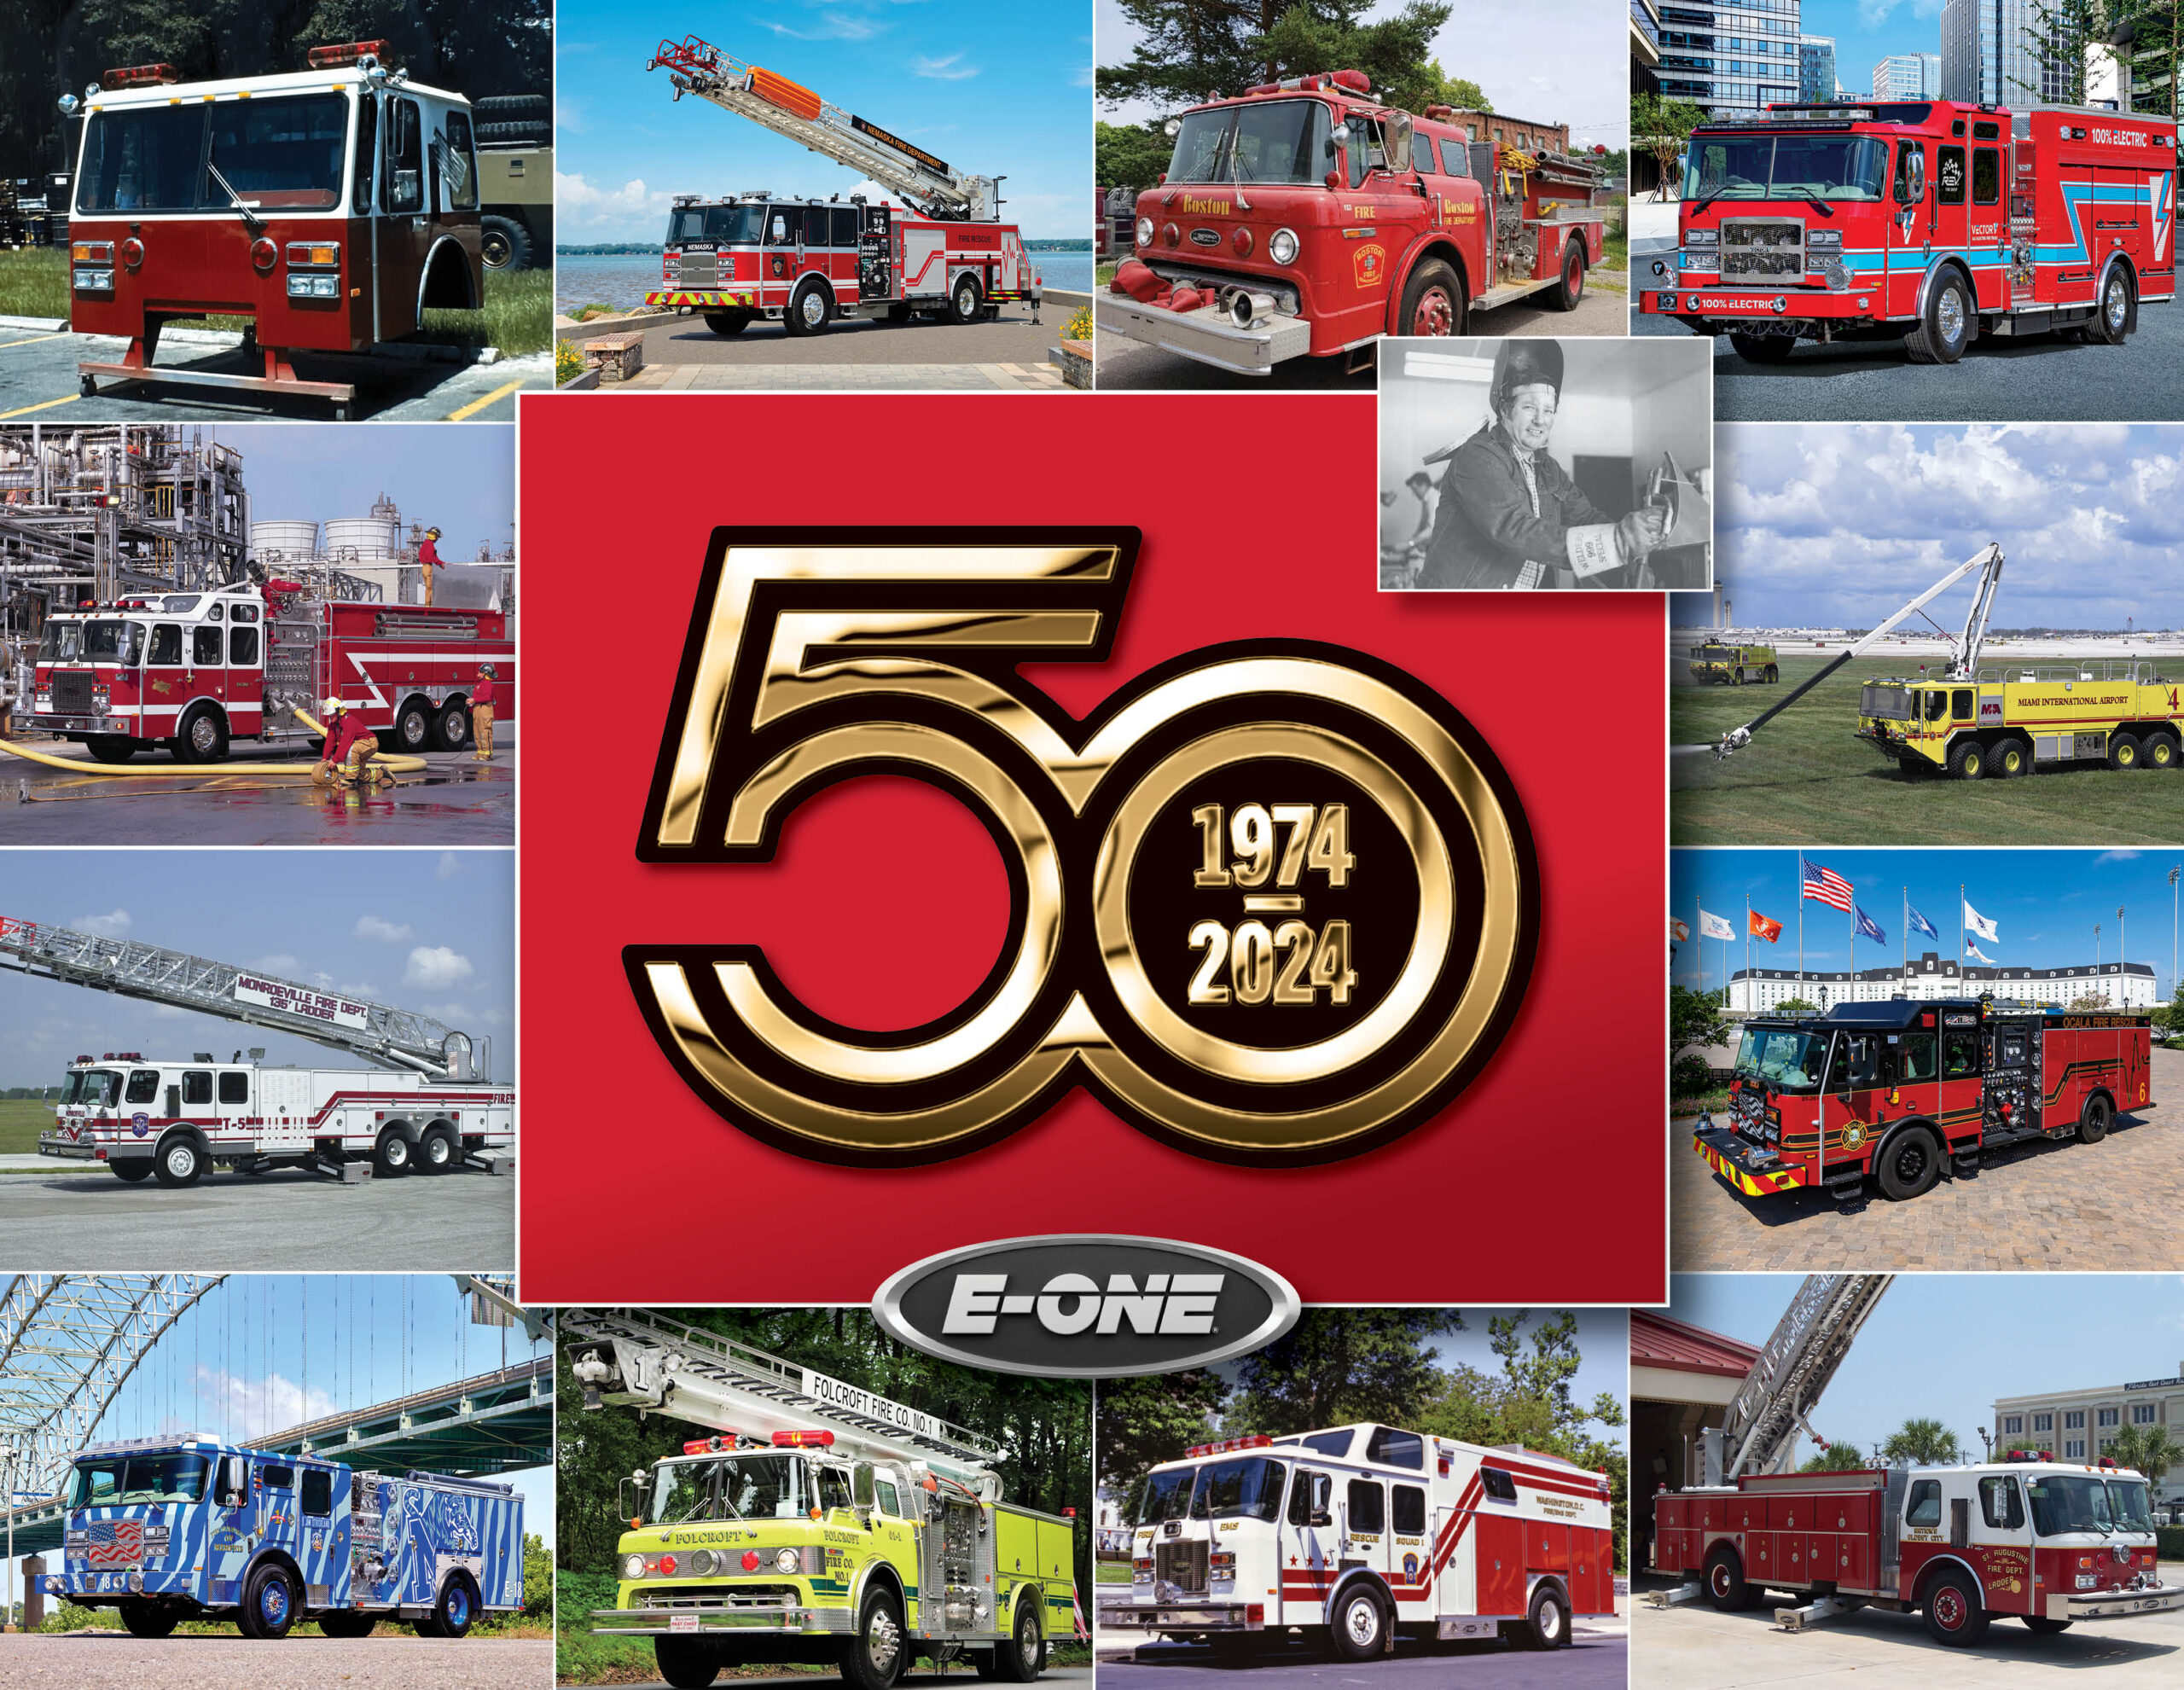 50 years of E-ONE fire trucks